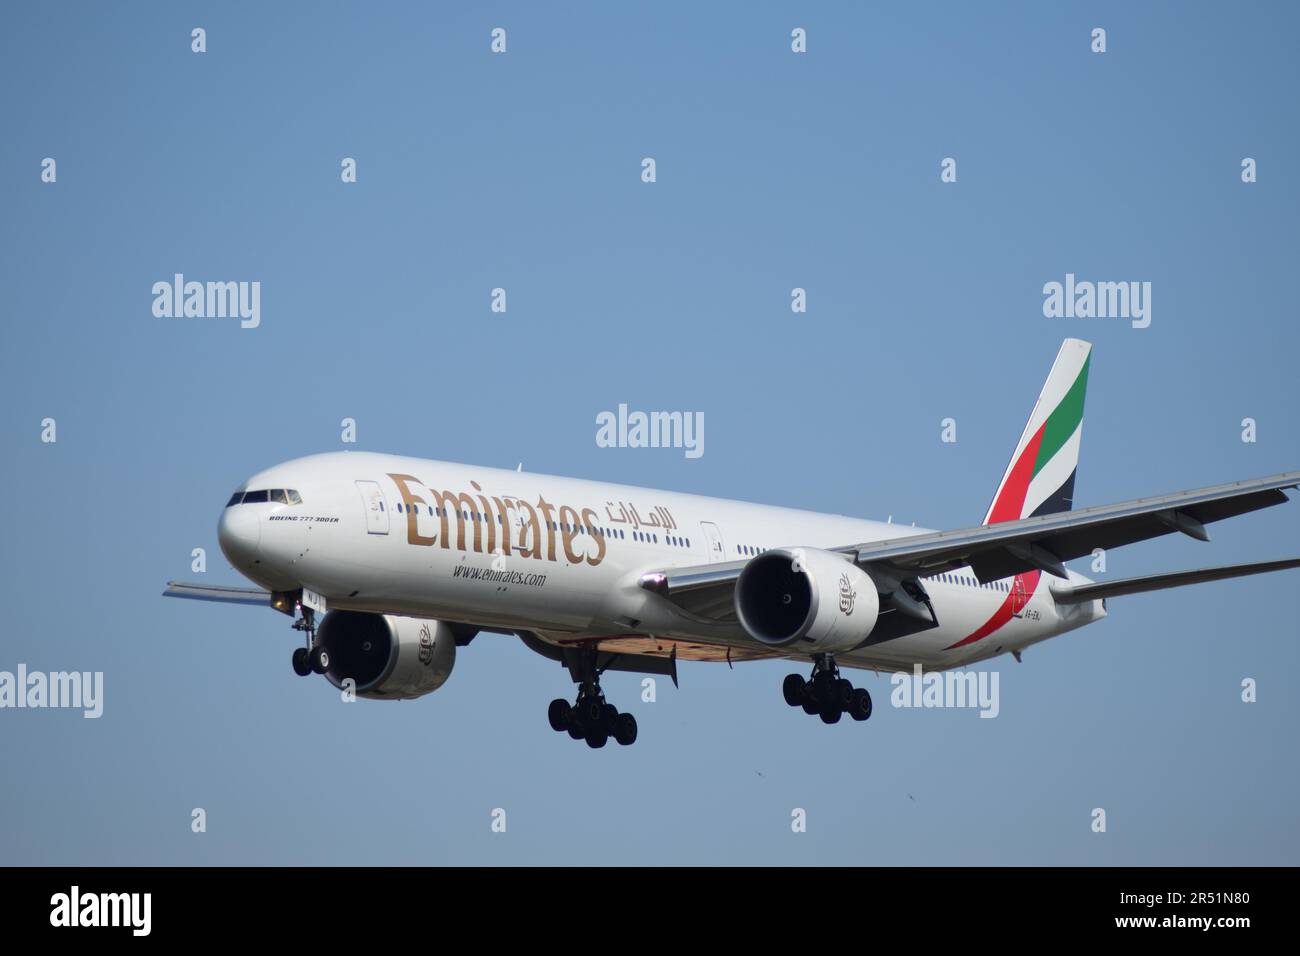 Barcelona, Spanien - 27. September 2019: A6-ENJ Emirates Boeing 777-300 nähert sich der Landebahn. Emirates ist eine Fluggesellschaft der Vereinigten Arabischen Emirate. Stockfoto